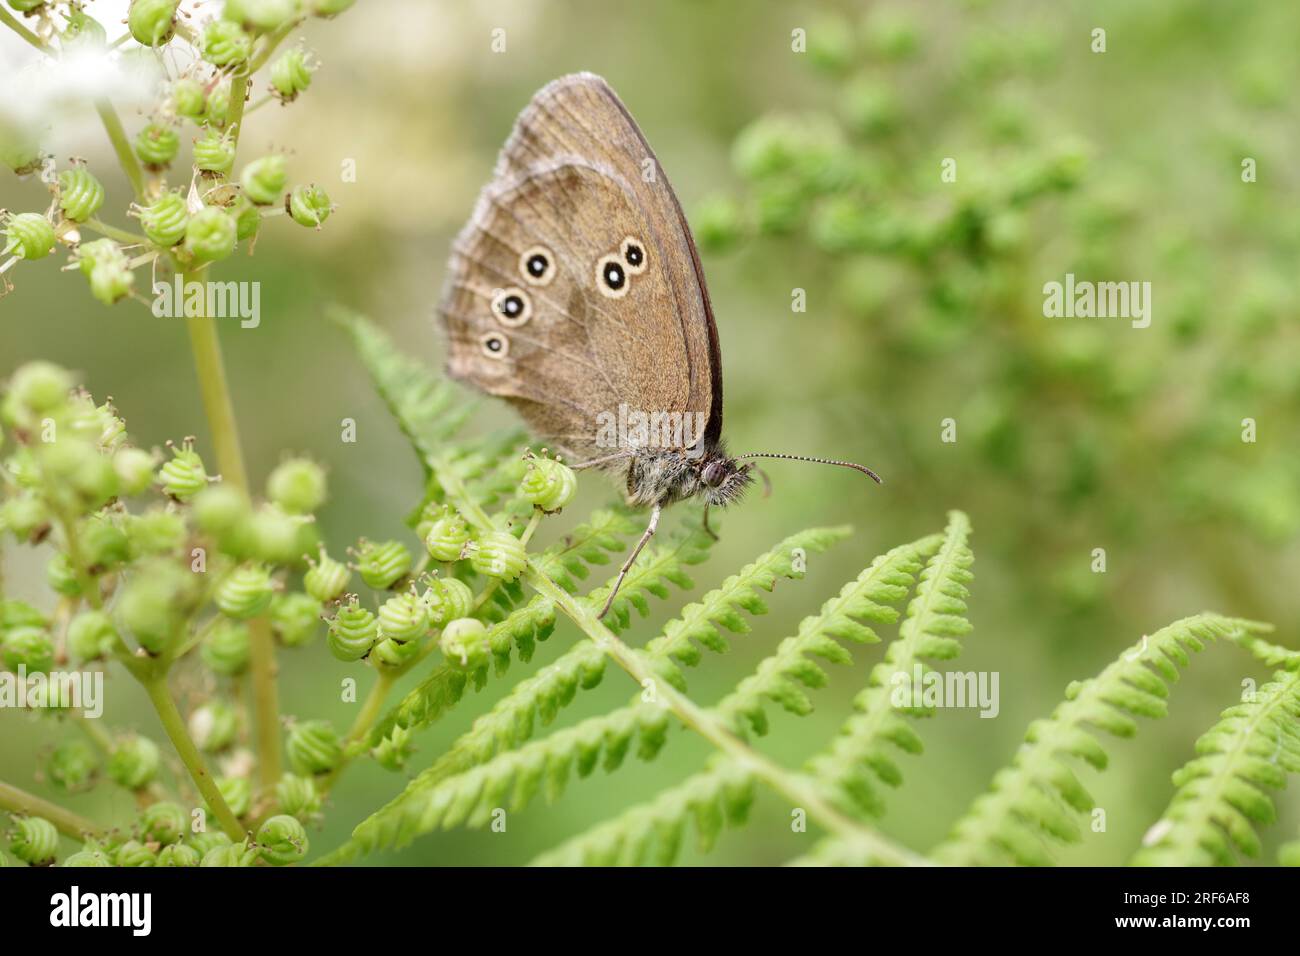 Farfalla, ringlet (Aphantopus hyperantus), farfalla, insetto, felce, marrone, ali, macro, primo piano dell'uccello marrone della foresta seduto sulle foglie verdi Foto Stock